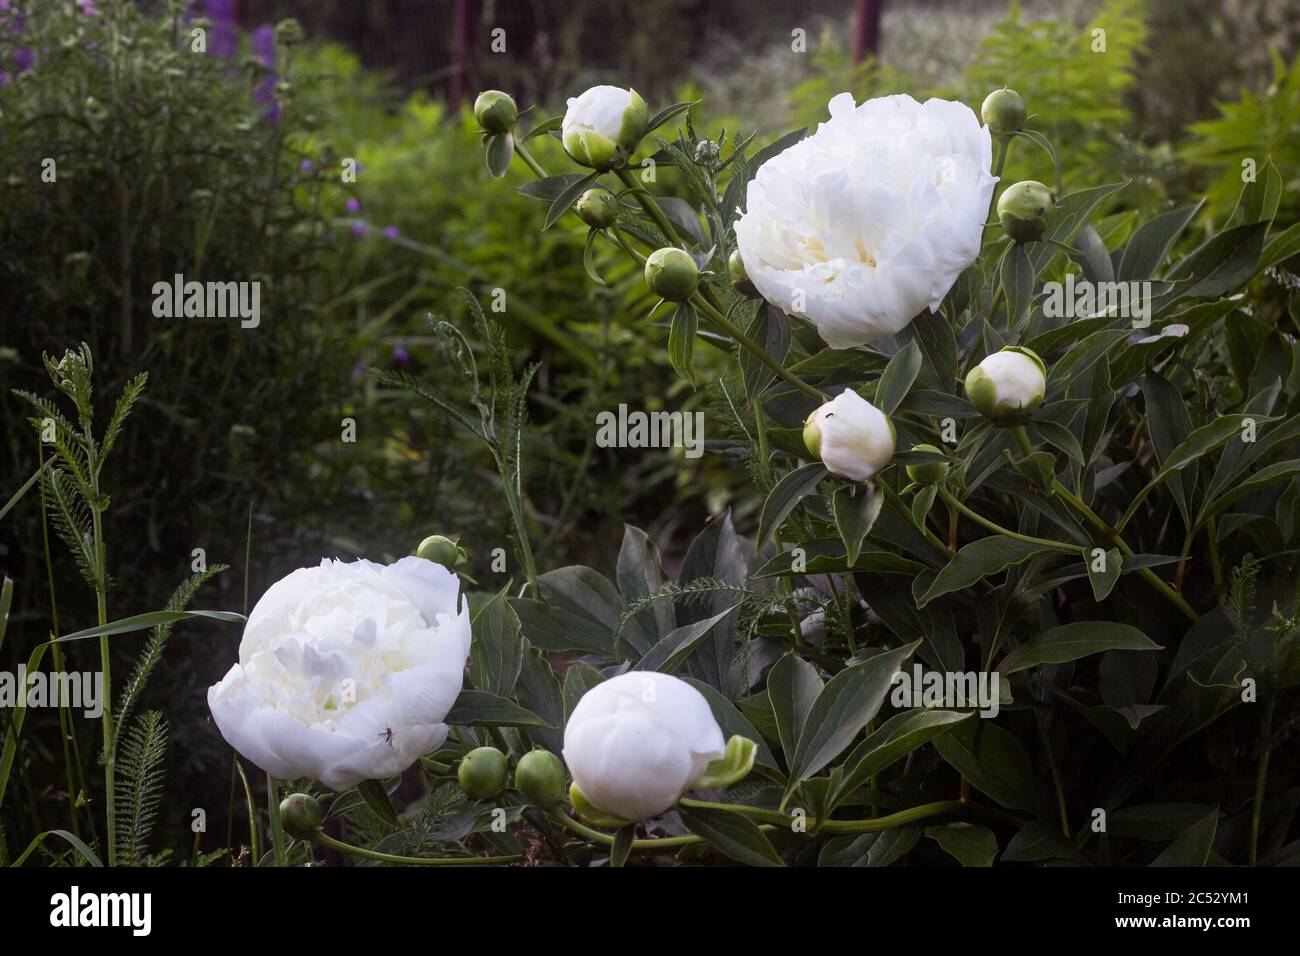 Weiße Pfingstrose Blütenstände, in voller Blüte und ungeöffneten Knospen, Hintergrund Unschärfe, selektiver Fokus, Mangel an Menschen Stockfoto